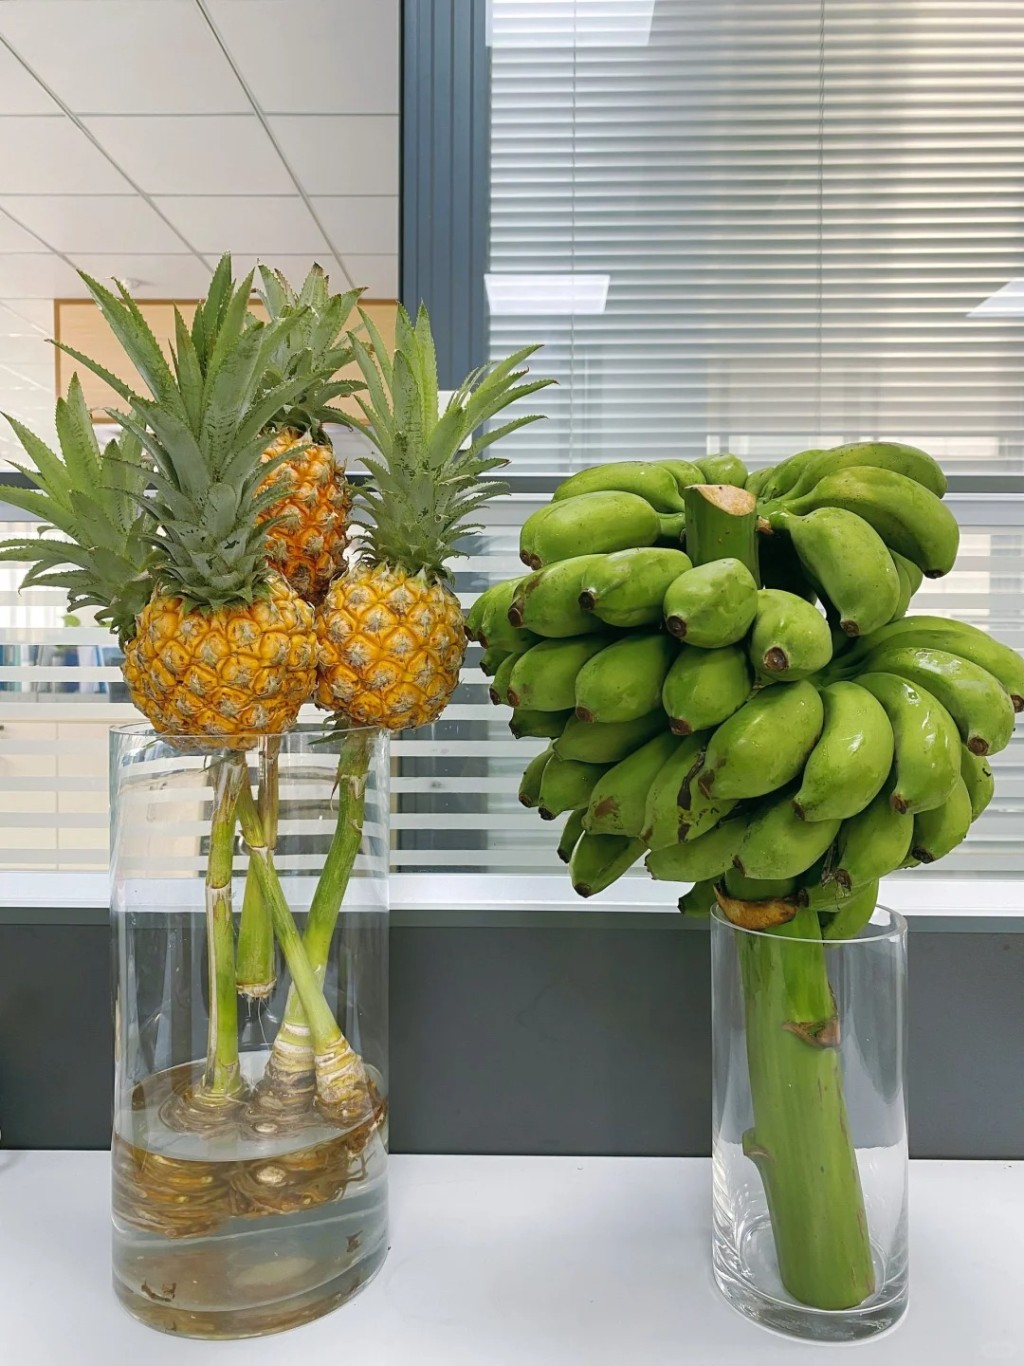 内地年轻白领流行在工作间栽种「蕉绿」、「动感光菠」等谐音水果，认为有纾减压力功效。小红书